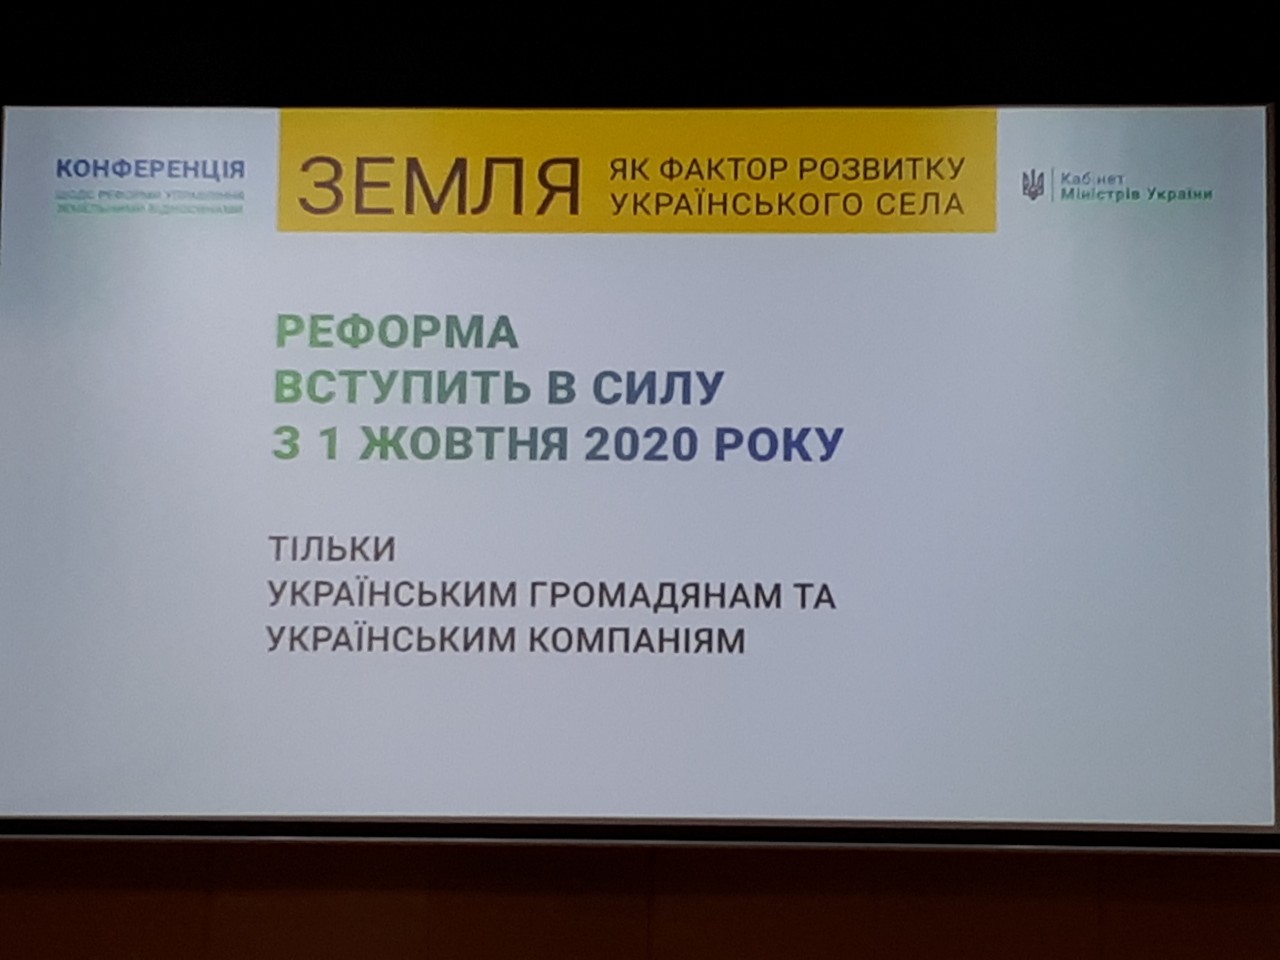 Додатково конференція щодо реформи управління земельними відносинами «Земля як фактор розвитку українського села» 11